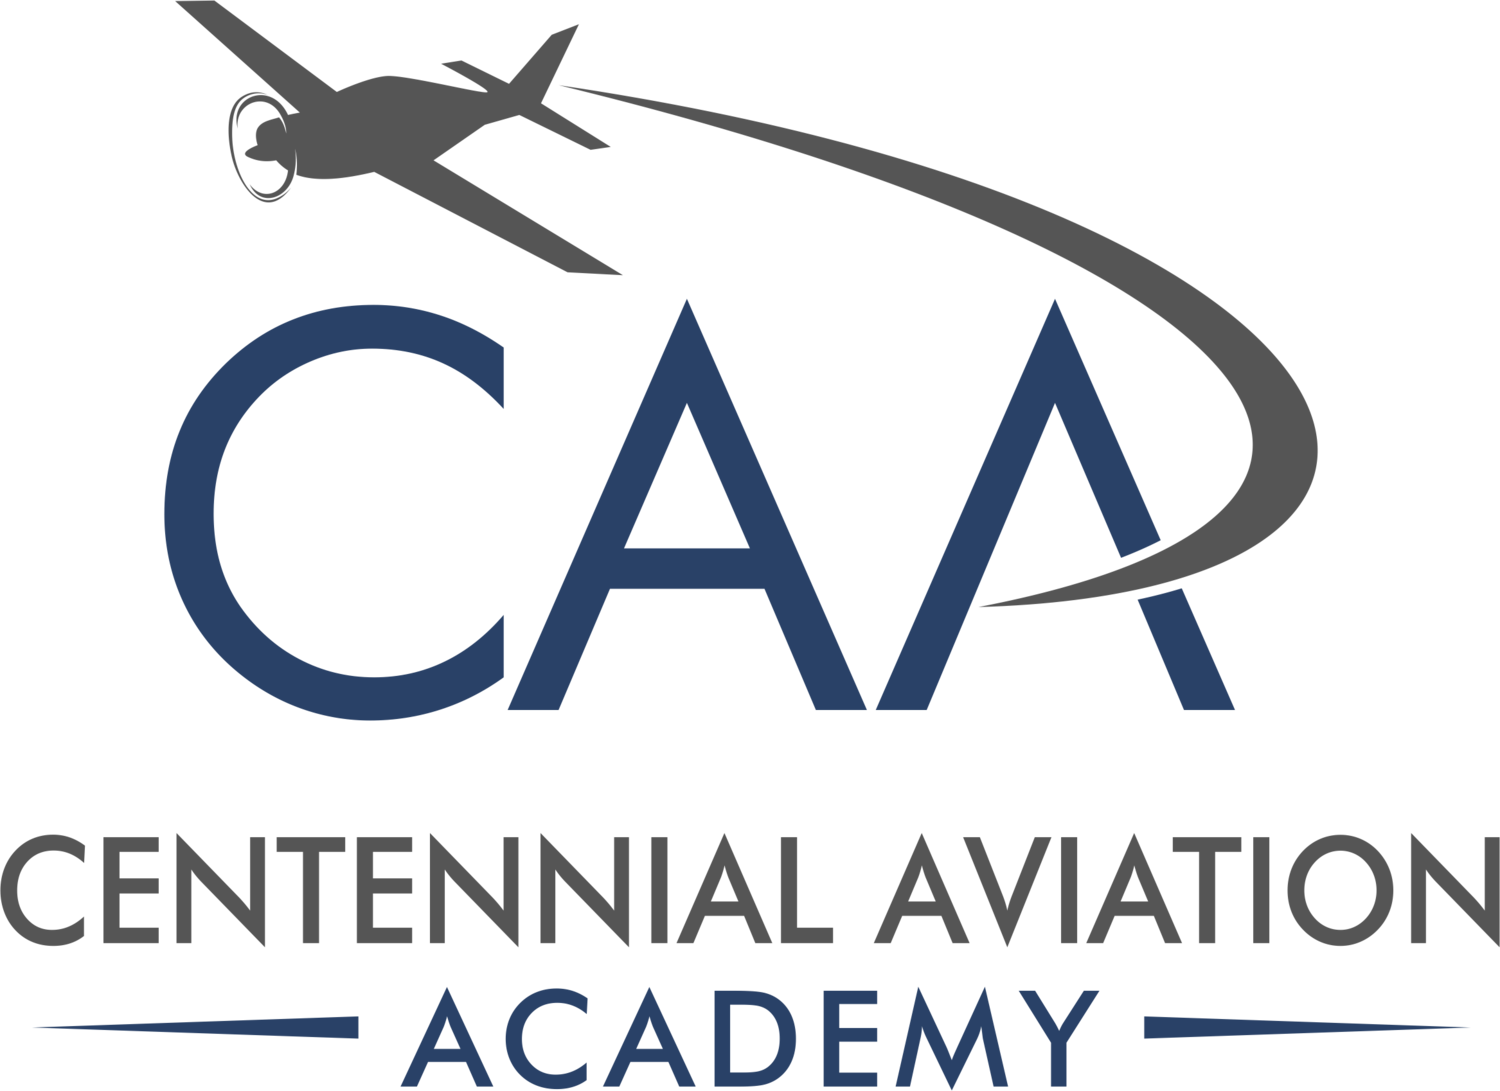 Centennial Aviation Academy